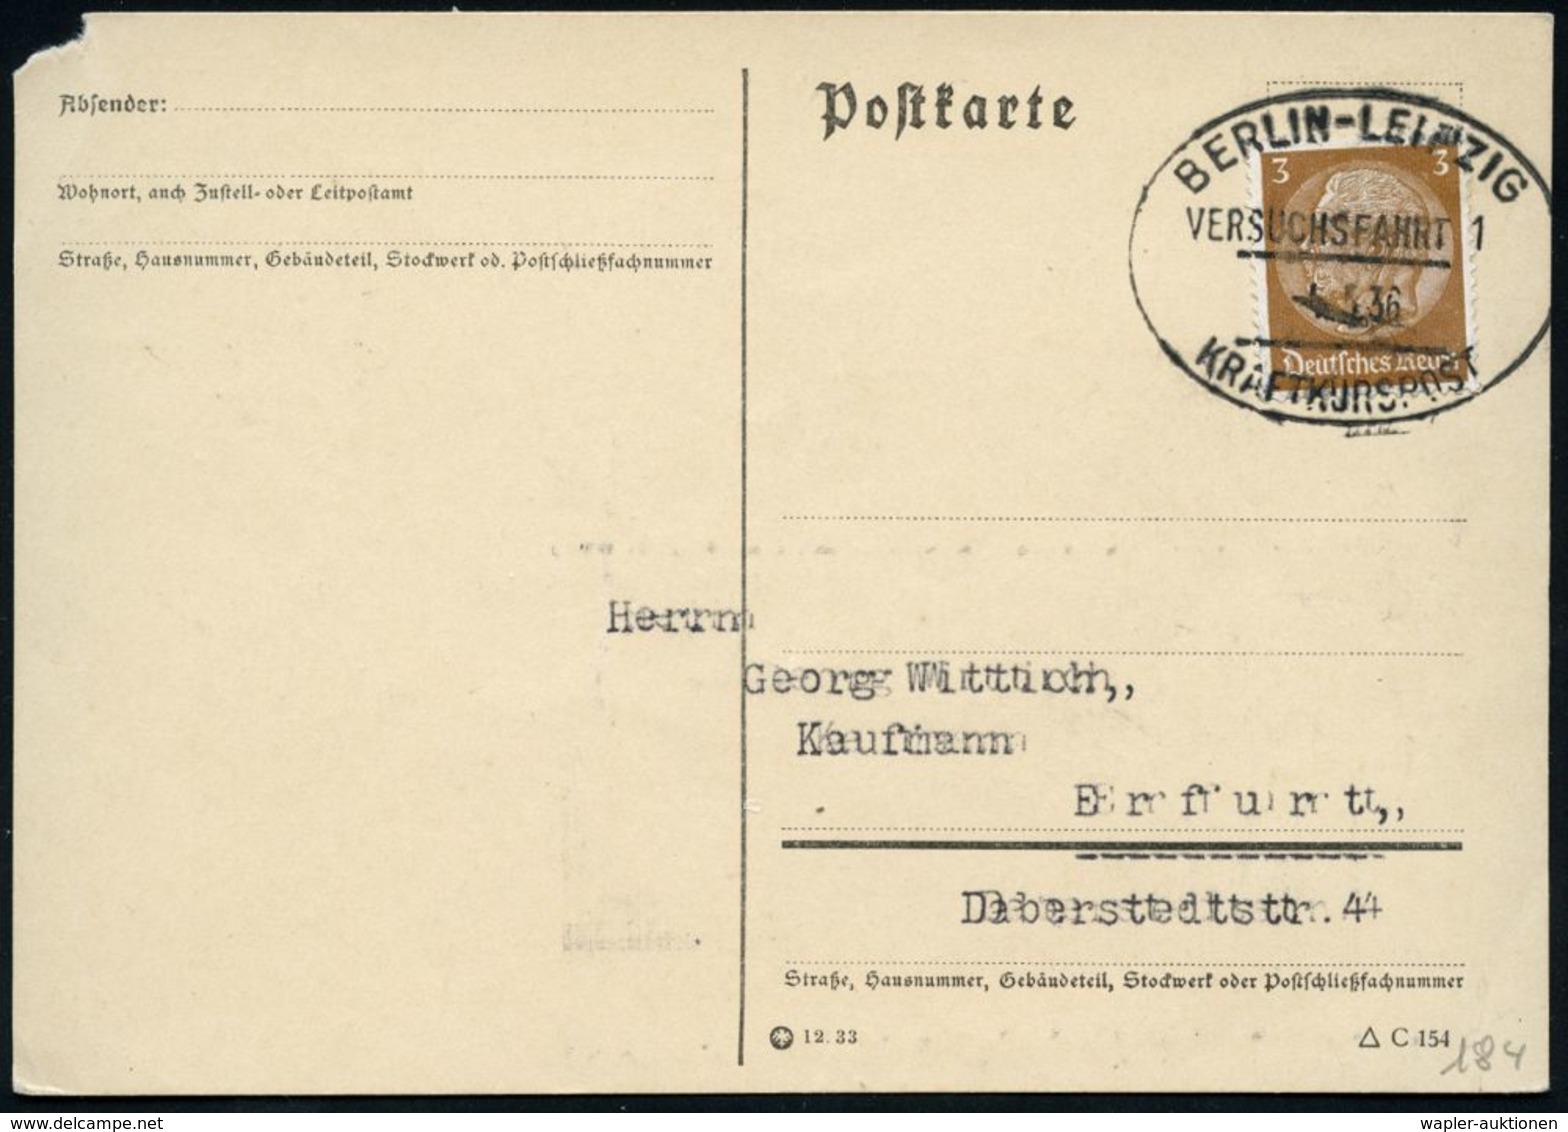 BERLIN-LEIPZIG/ VERSUCHSFAHRT 1/ KRAFTKURSPOST 1936 (5.5.) Seltener Oval-St Von Der Eröffnungsfahrt! , Inl.-Karte + Kopi - Autos